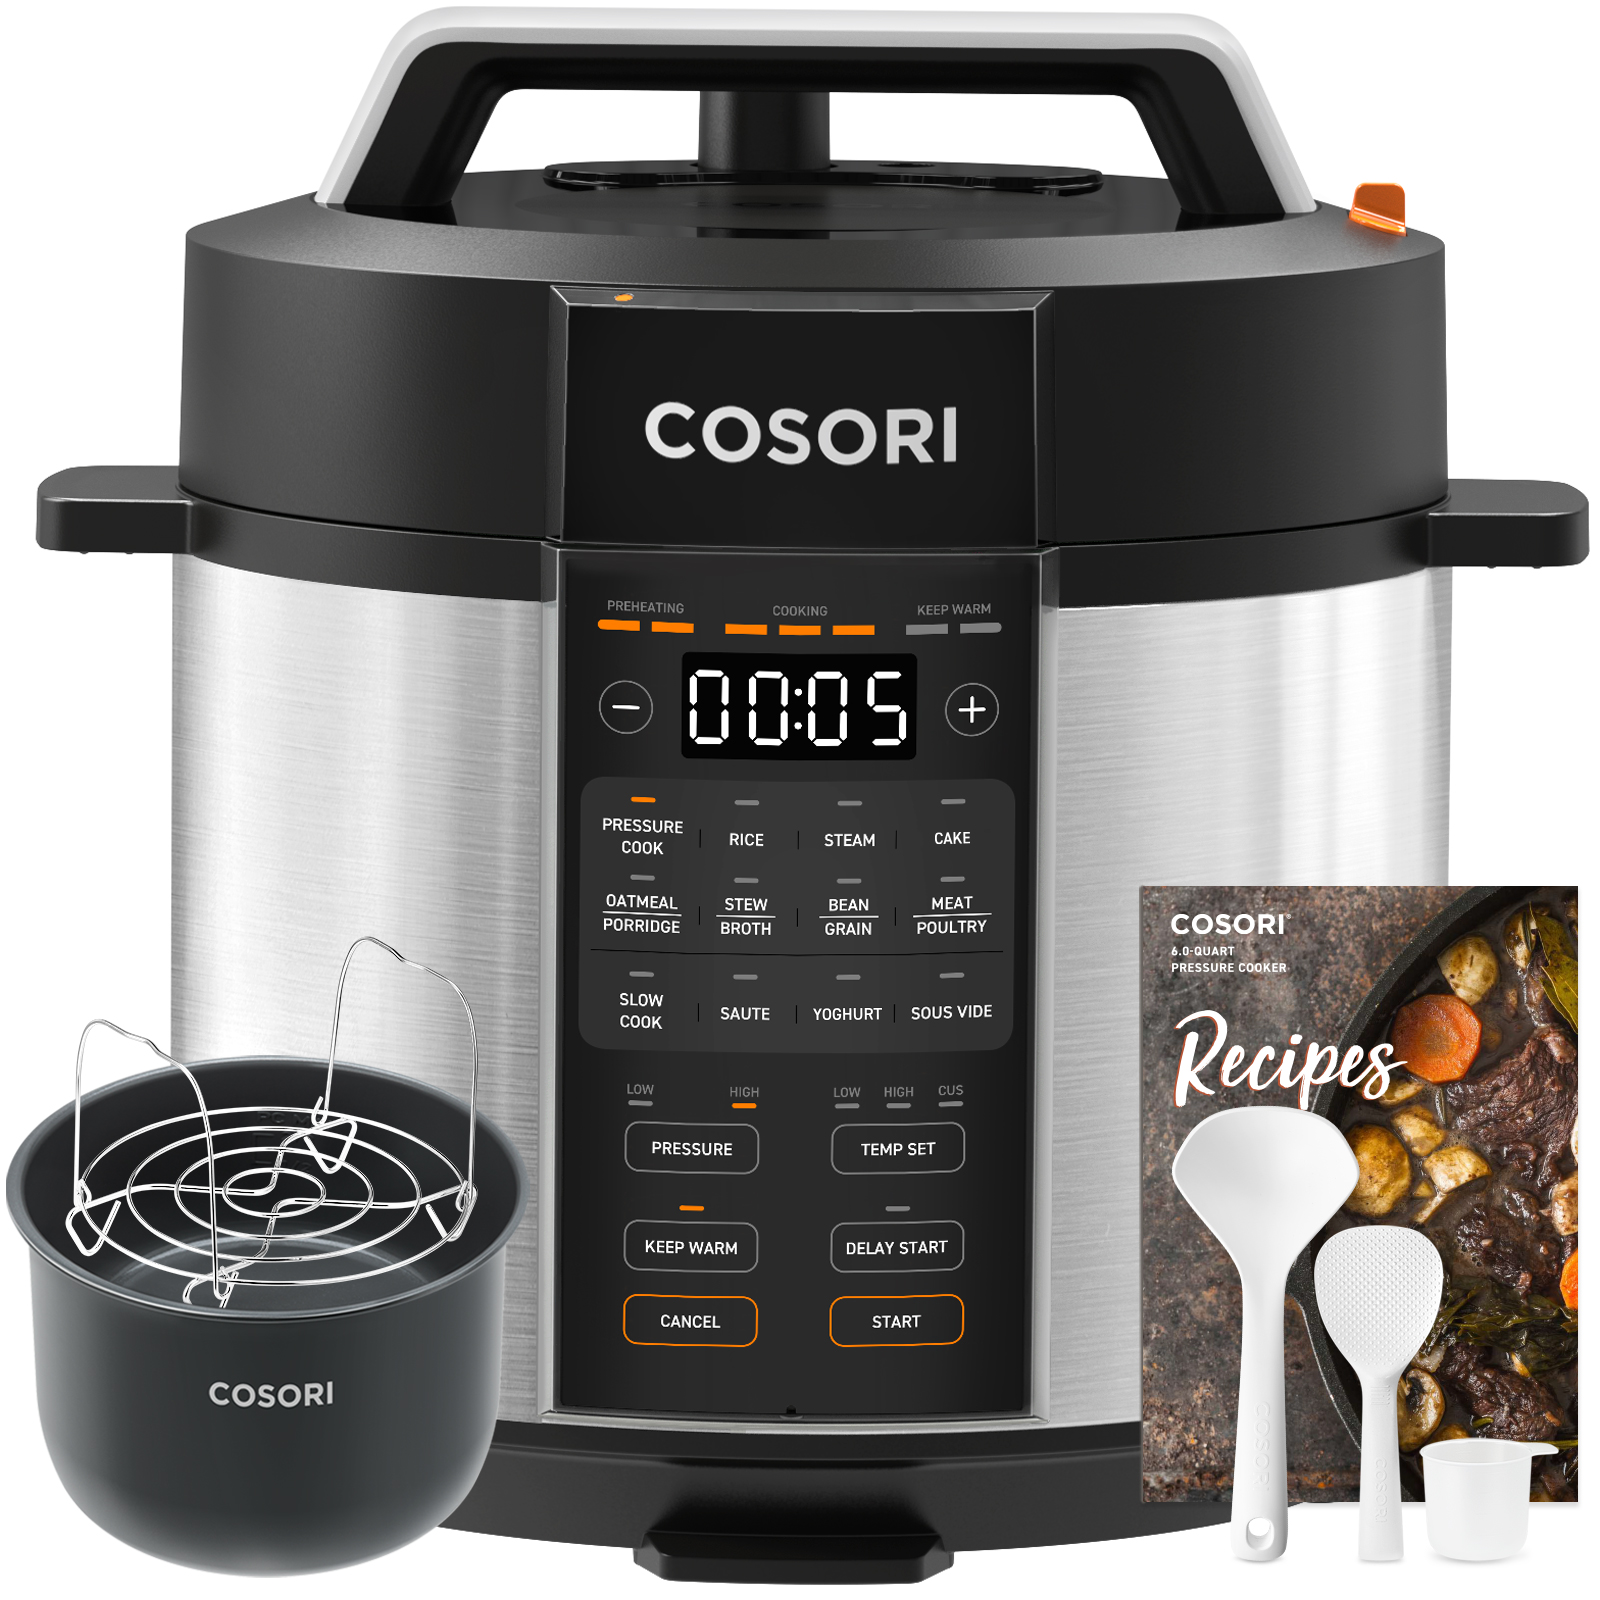 Cosori Electric Pressure cooker